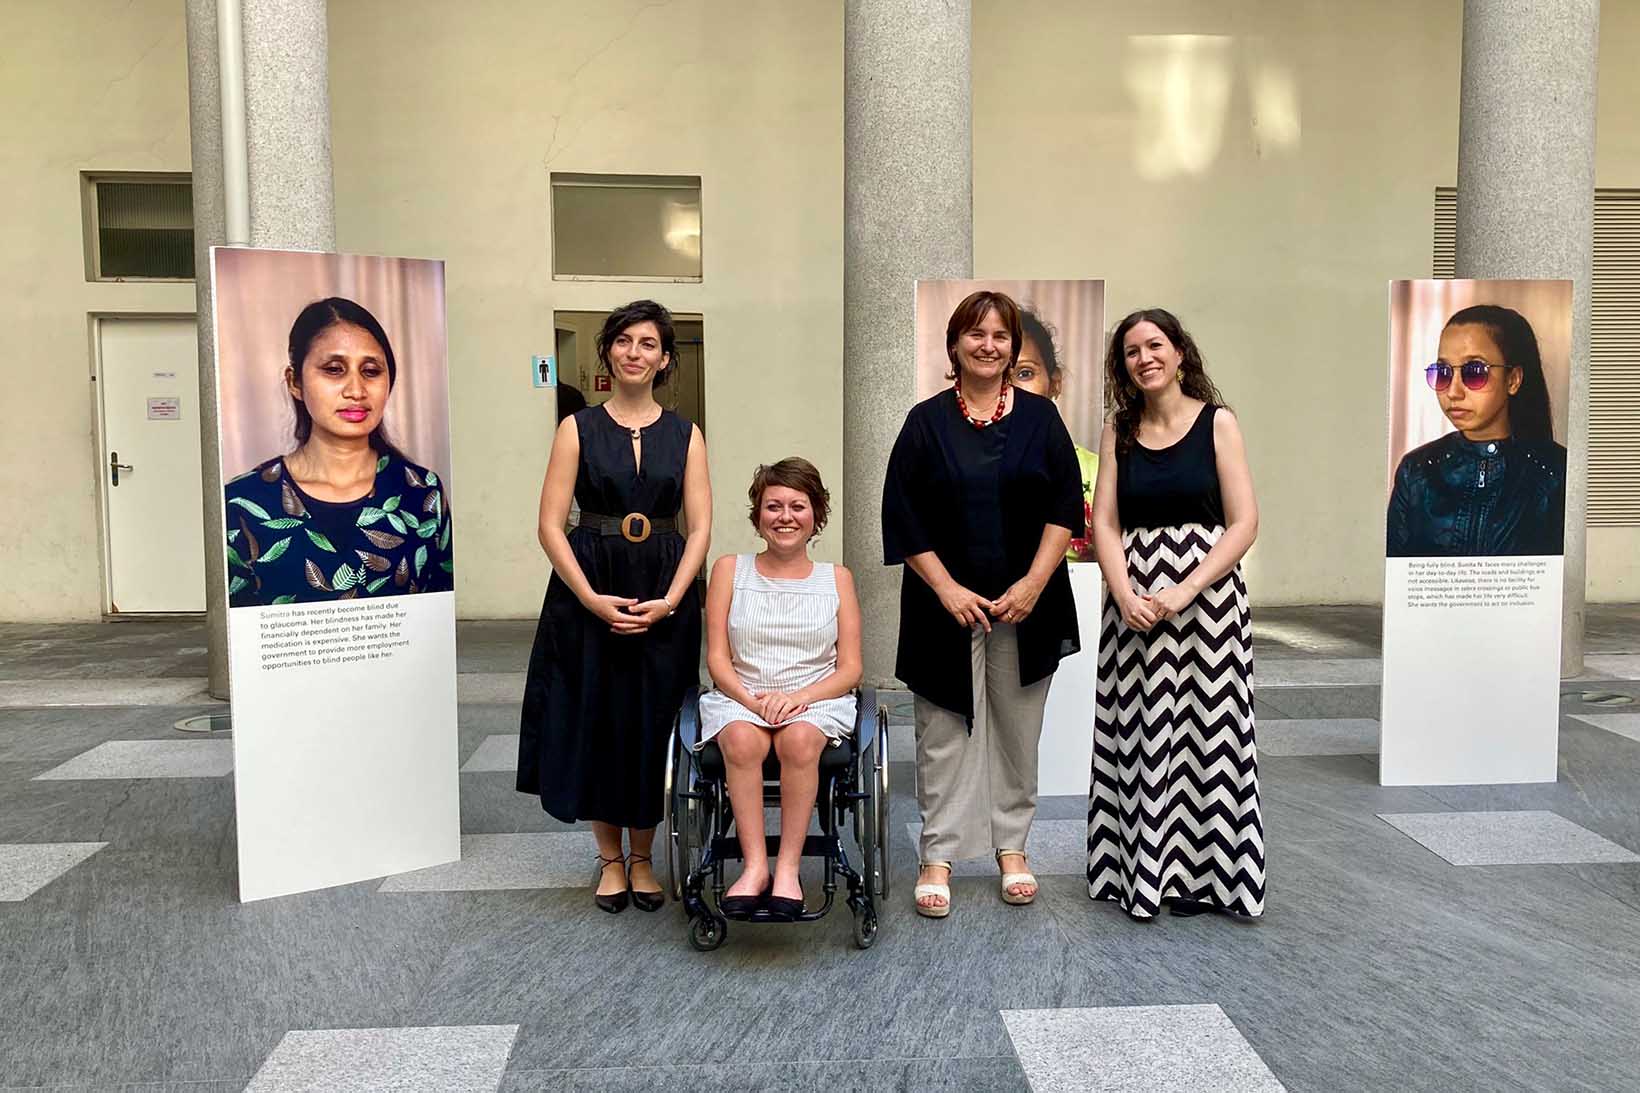 Vier Frauen werden im Rahmen einer Fotoausstellung von vorne abgelichtet. Links und rechts von ihnen steht jeweils ein Fotoporträt einer nepalesischen Frau mit Behinderung.